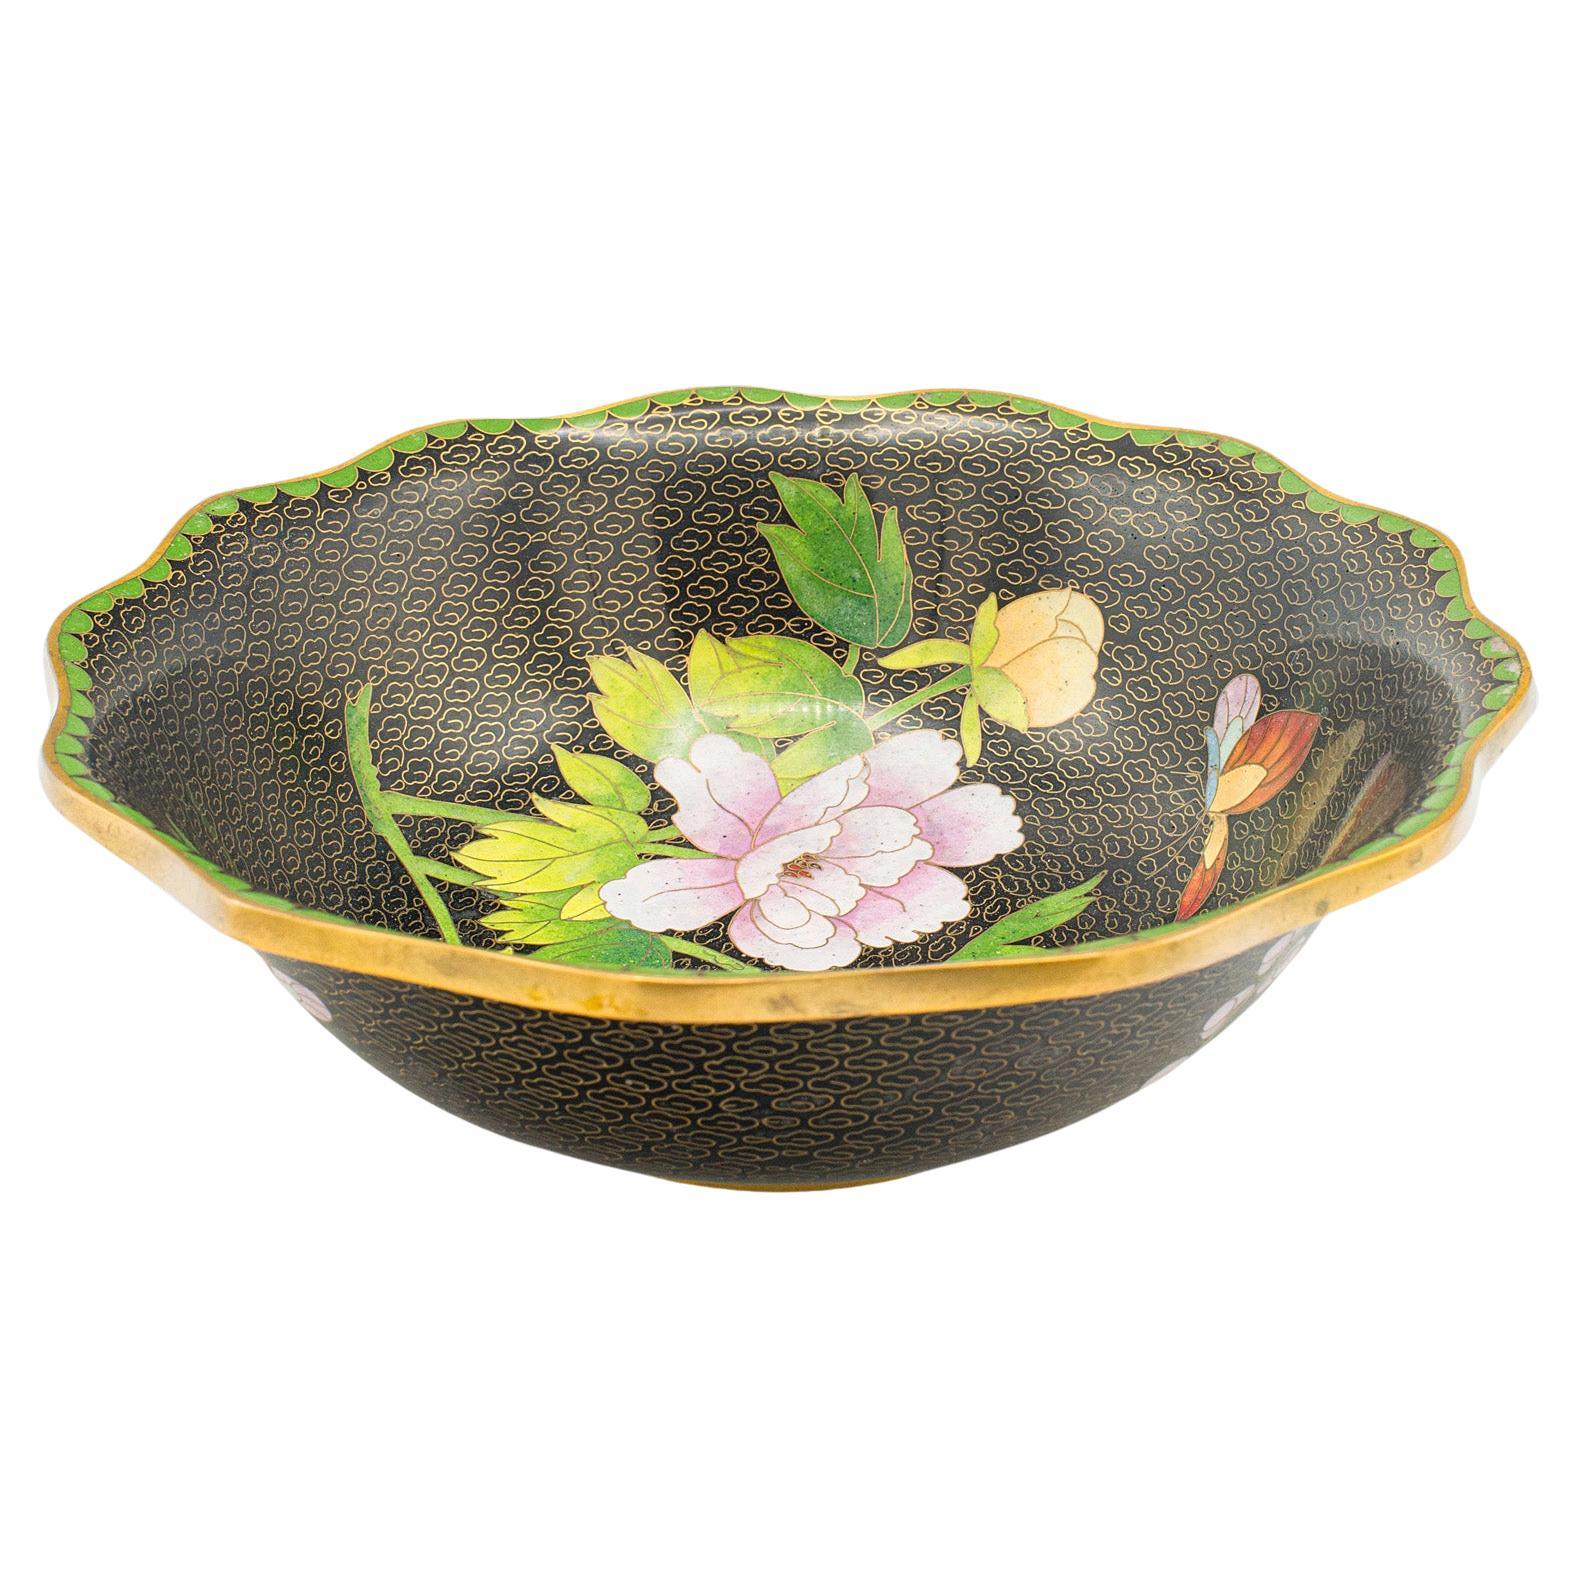 Antique Decorative Bowl, Japanese, Cloisonne, Bonbon, Grape Dish, Circa 1920 For Sale